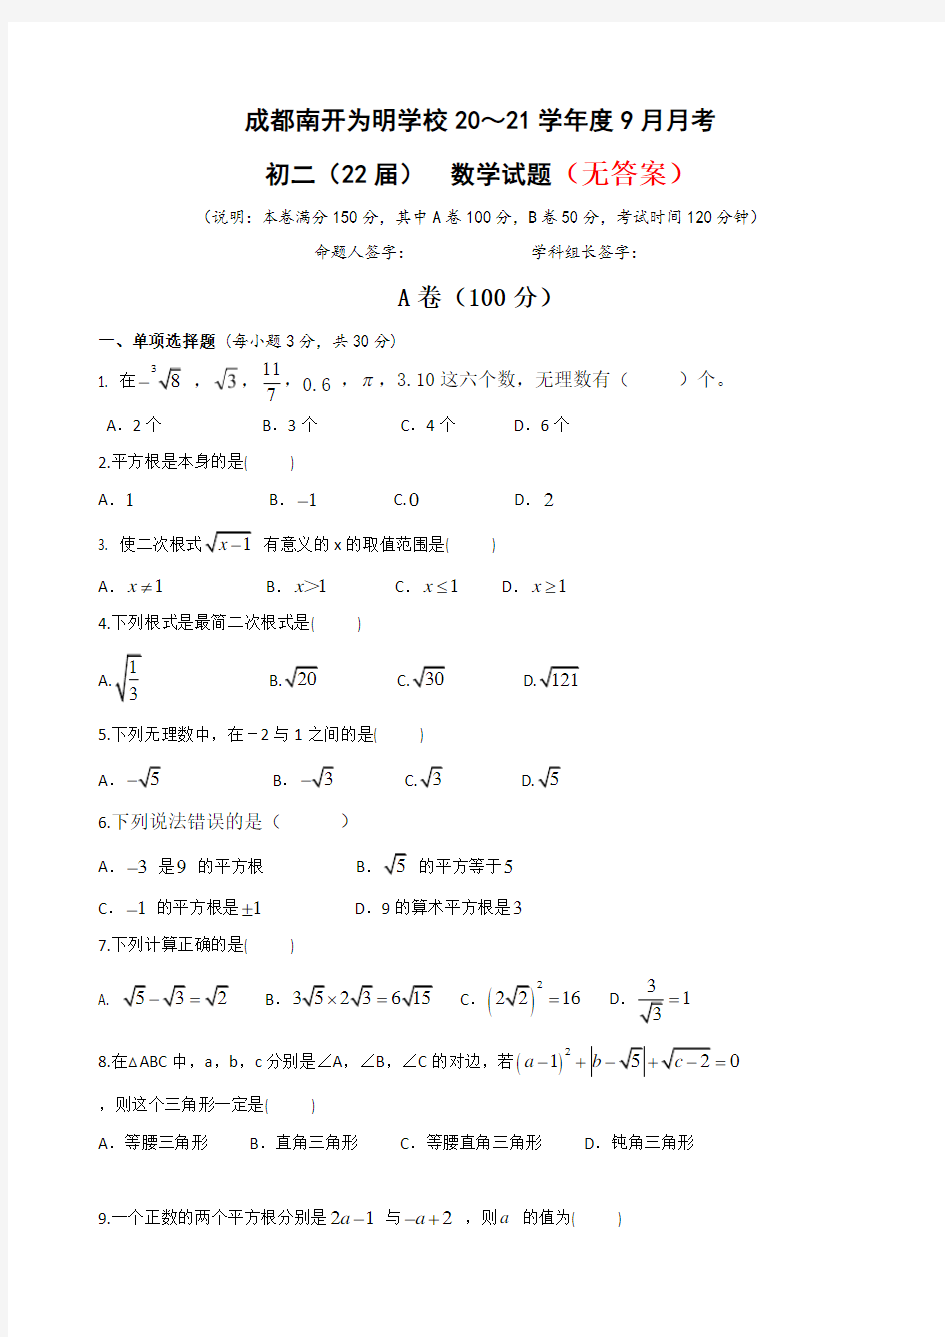 【人教版】八年级(上)月考数学试卷(10月份)共3份